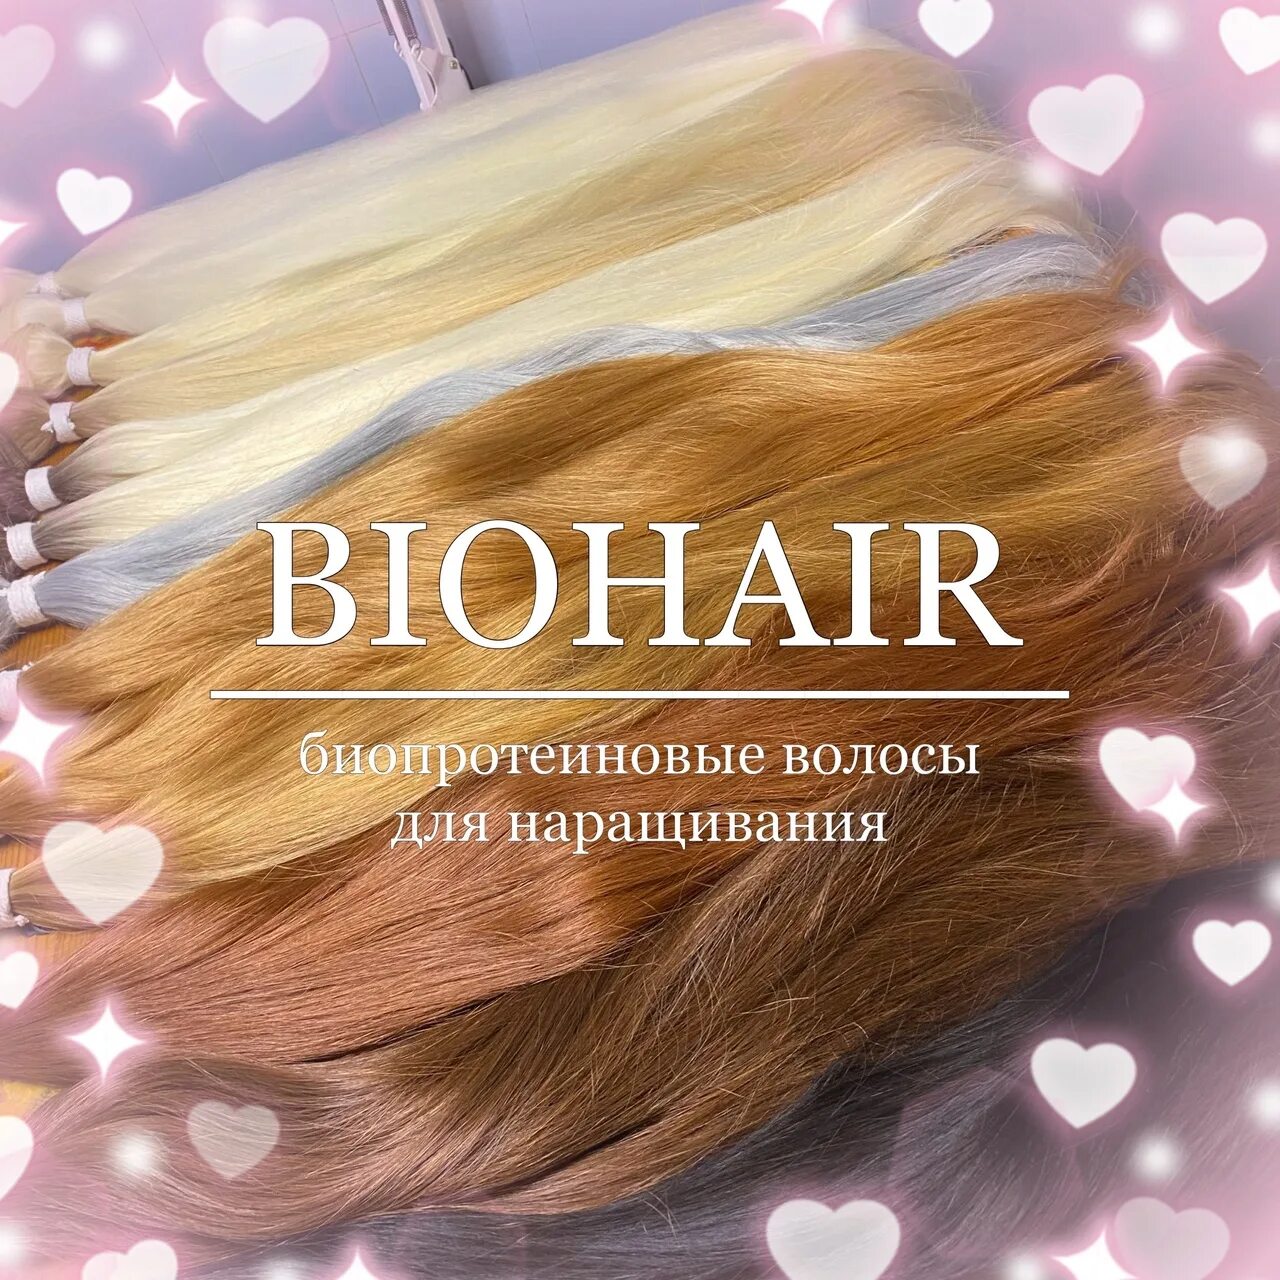 Биопротеиновое наращивание отзывы. Биопротеиновые волосы наращивание. Волосы биопротеин для наращивания. Нарощенные волосы биопротеиновые. Боипротеиновое наращивание волос.